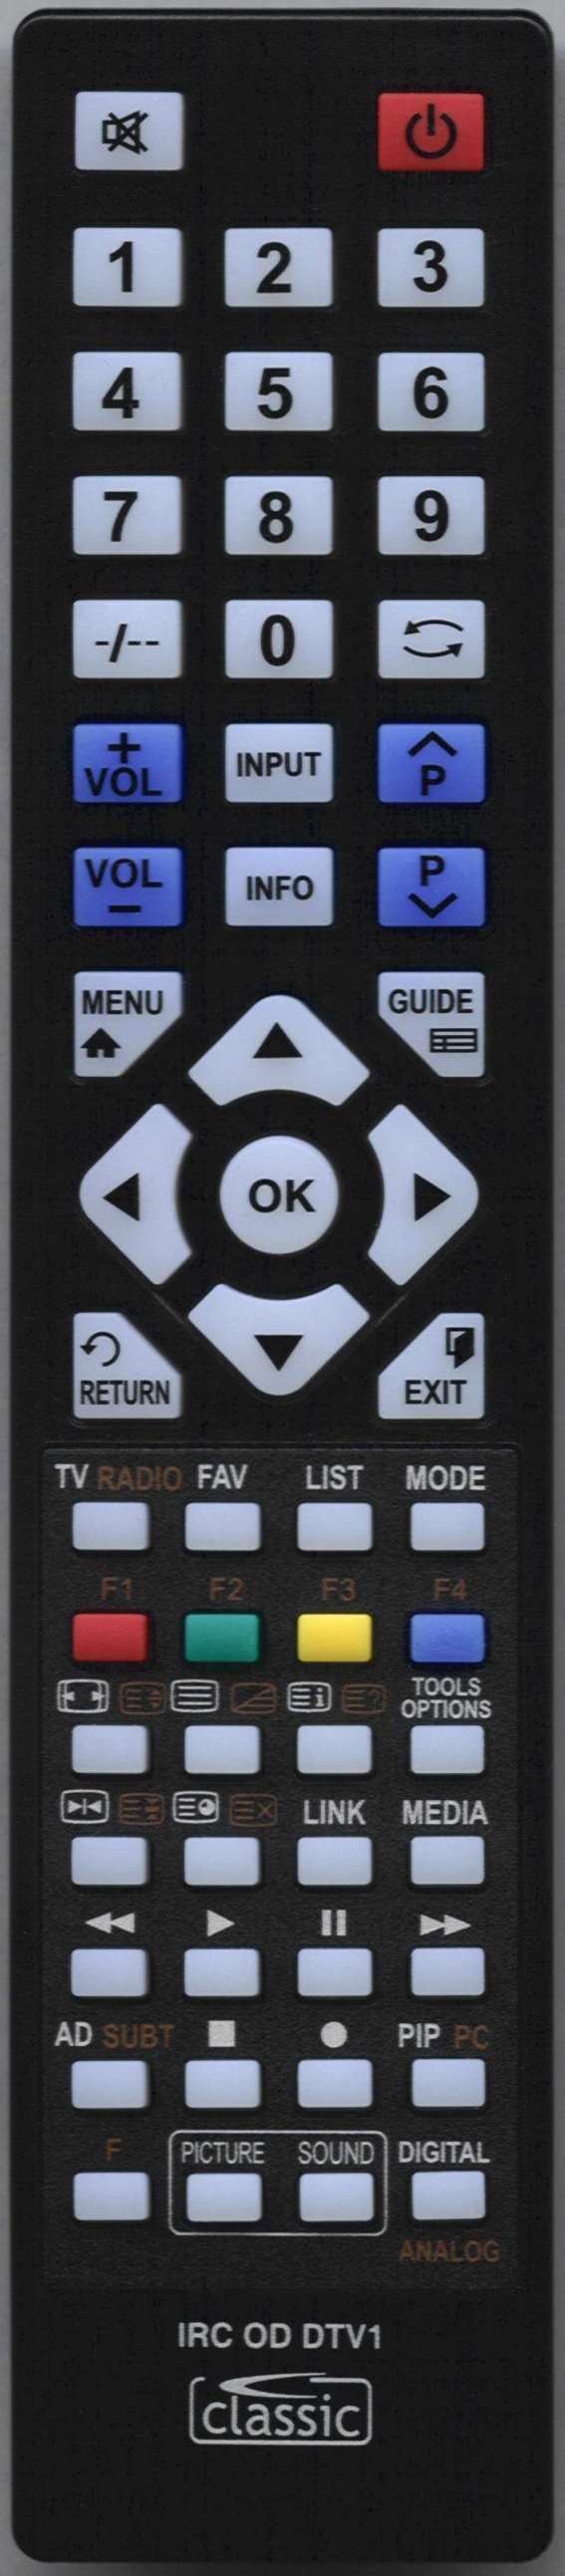 Beko 2151 SAT Remote Control